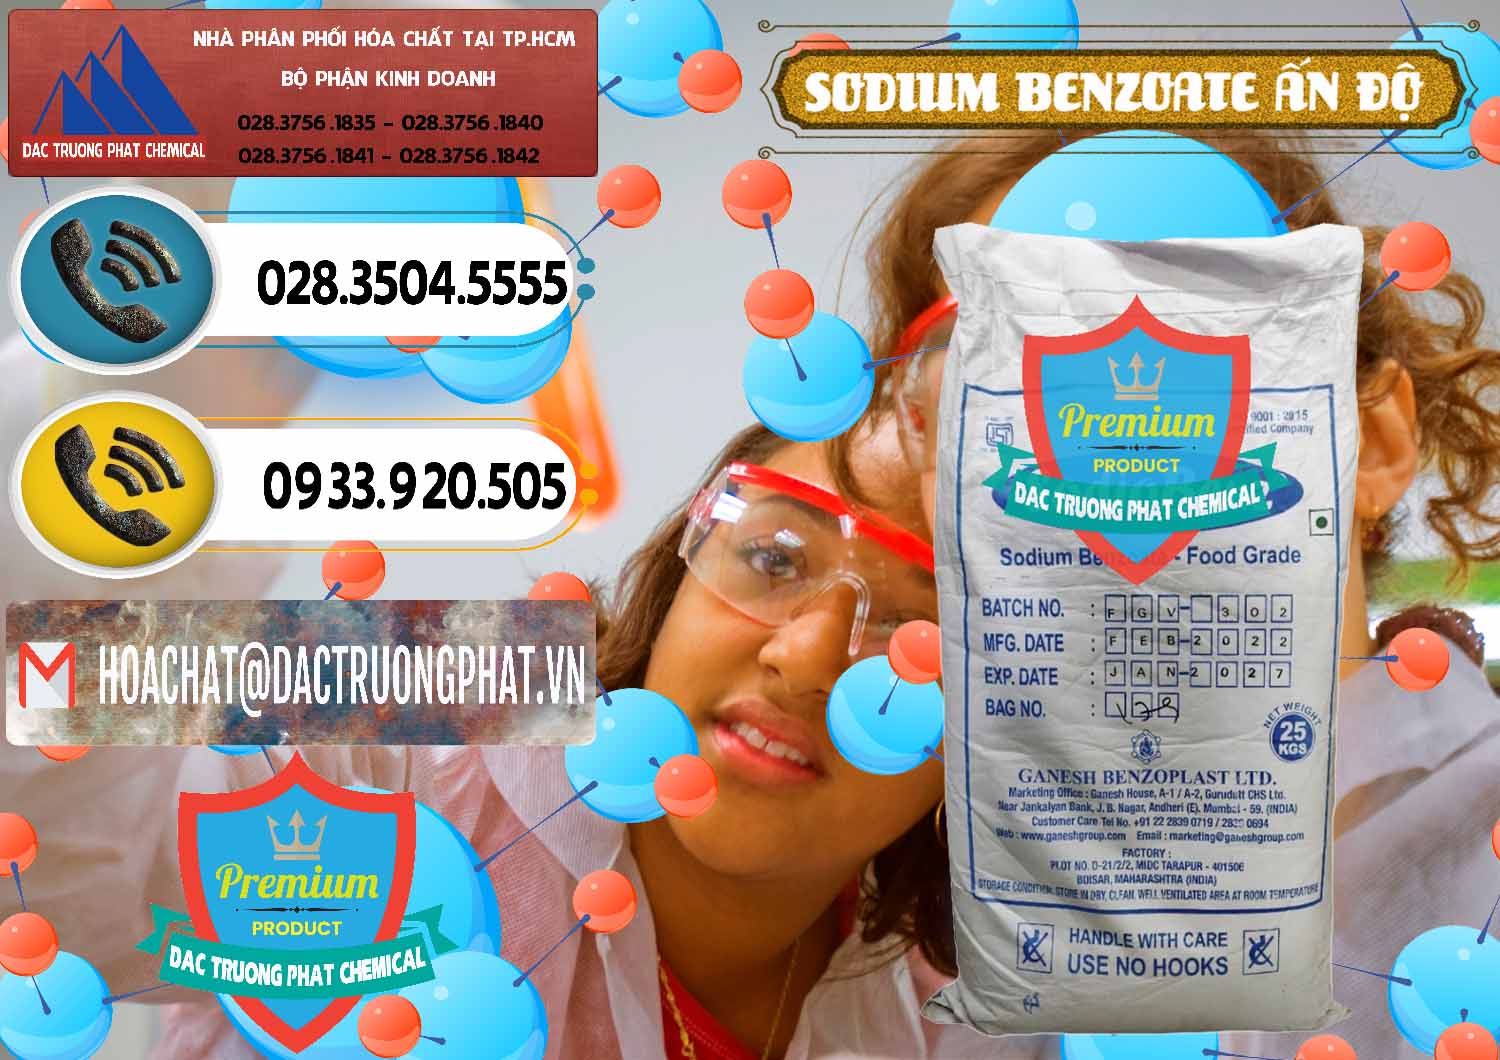 Công ty bán - phân phối Sodium Benzoate - Mốc Bột Ấn Độ India - 0361 - Công ty cung ứng ( phân phối ) hóa chất tại TP.HCM - hoachatdetnhuom.vn